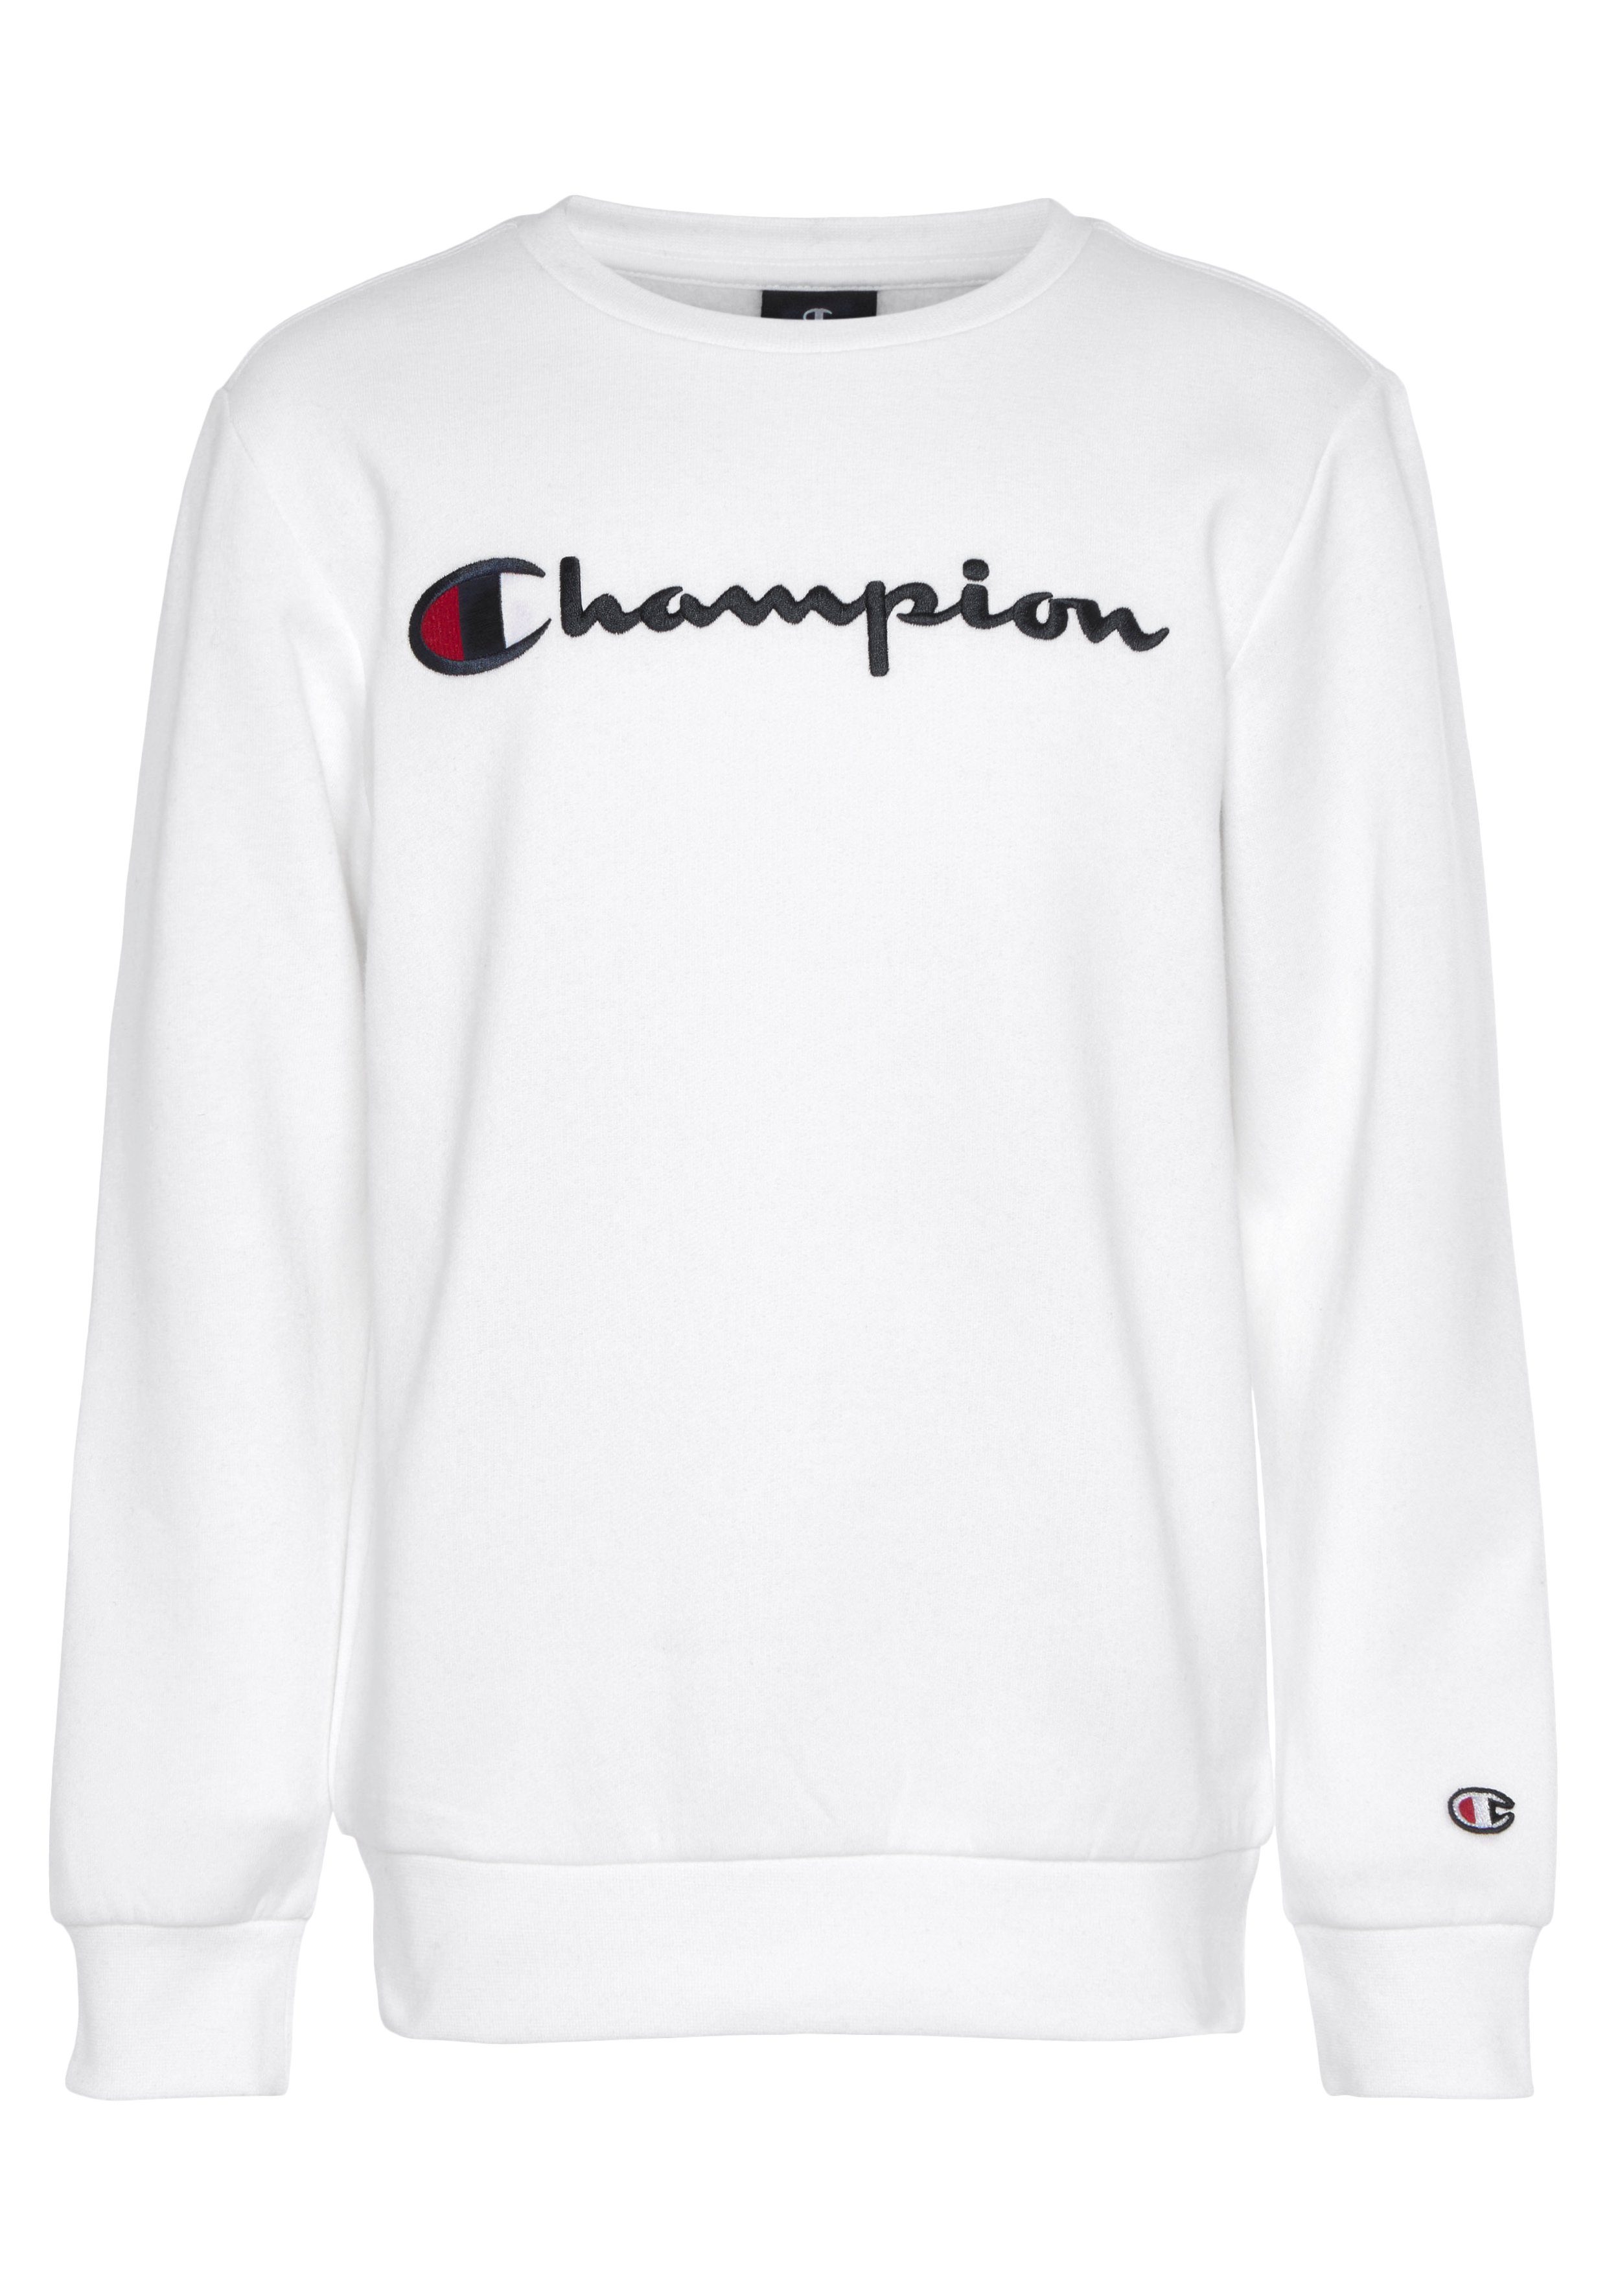 Logo Sweatshirt - Kinder Sweatshirt weiß Classic large Champion für Crewneck